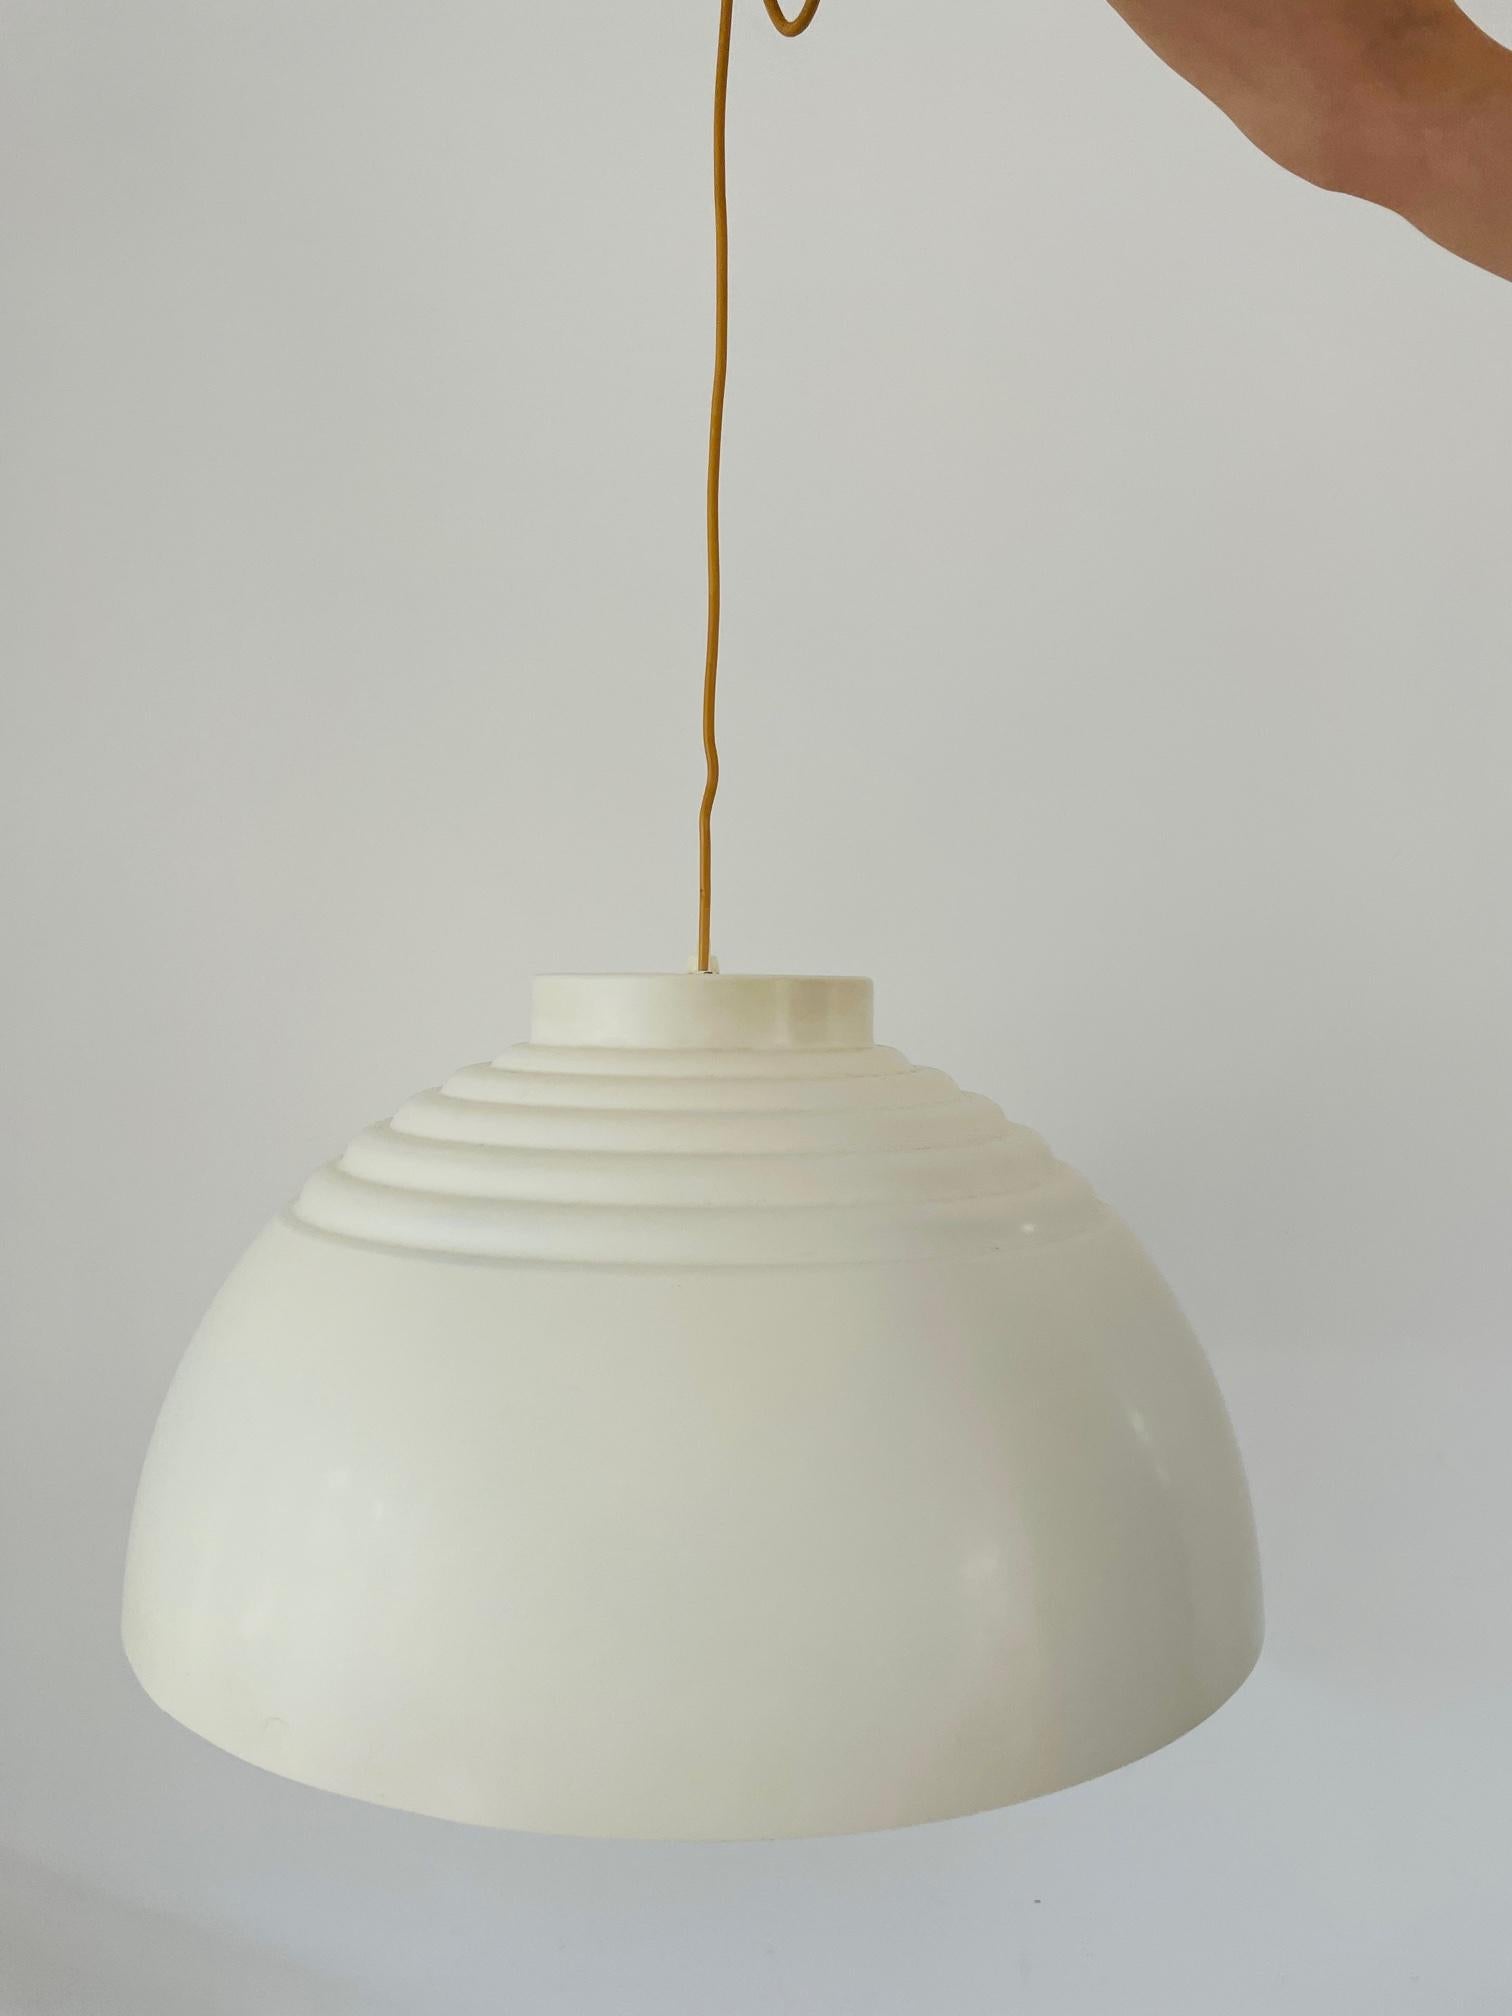 Dies ist eine der schönsten und seltensten Lampen, die ich je gesehen habe. Hergestellt von dem weltberühmten Hans-Agne Jakobsson. Dieser schwedische Designer hat viele Möbel und Leuchten entworfen. Dies ist eines der seltensten Exemplare überhaupt.